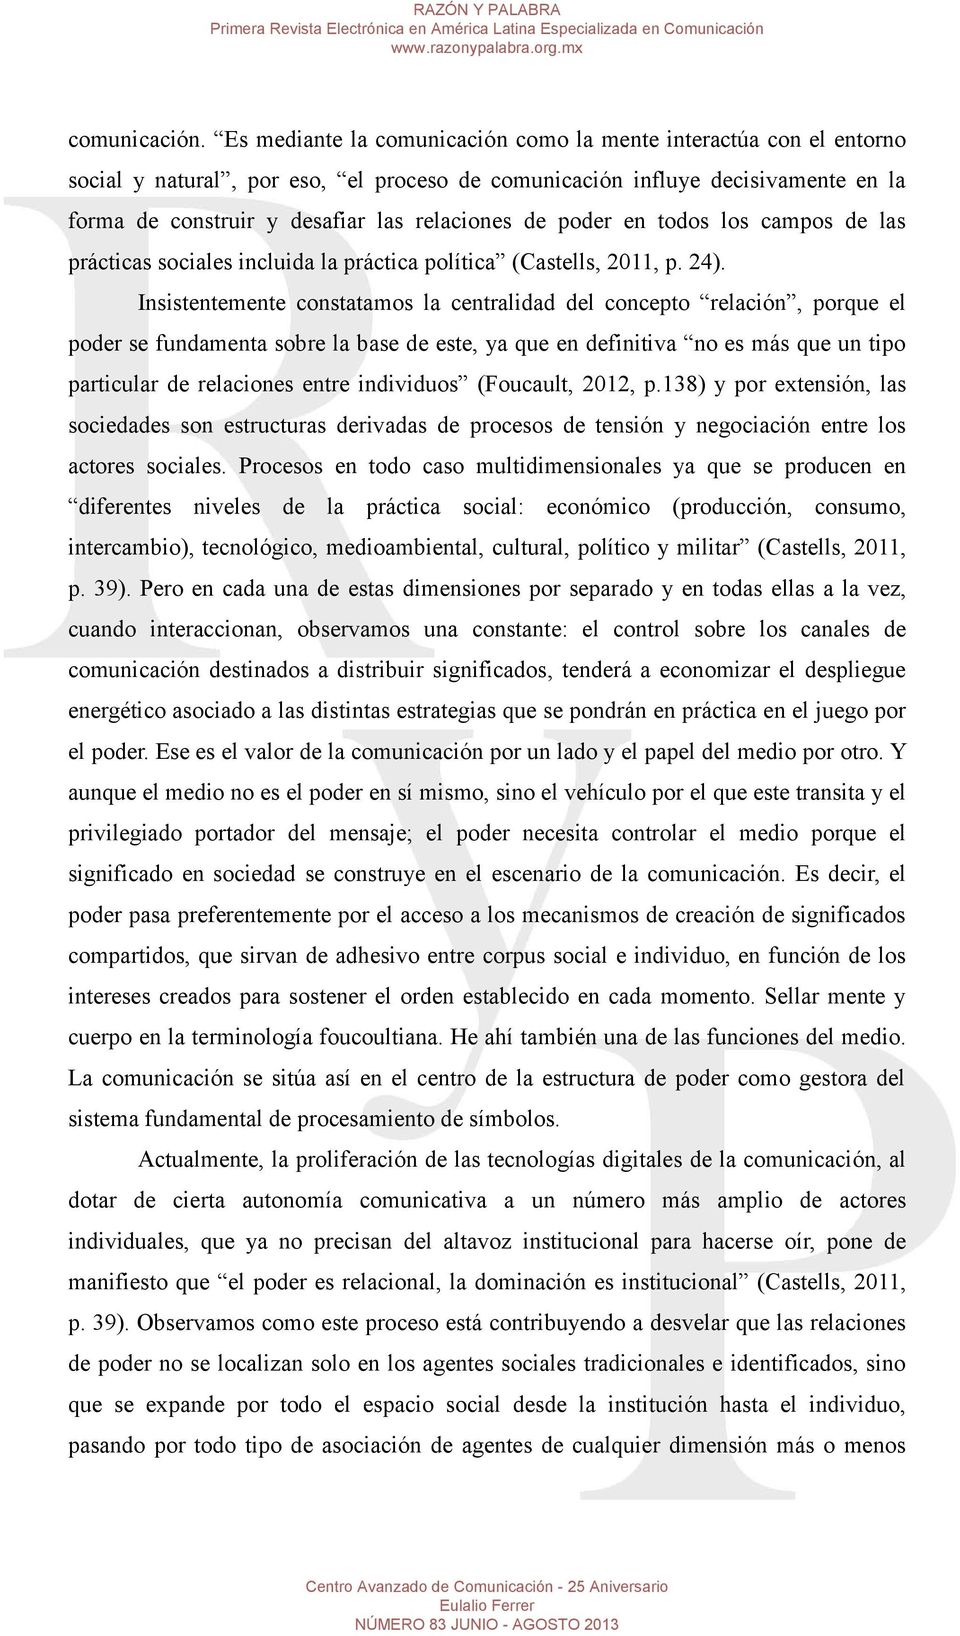 poder en todos los campos de las prácticas sociales incluida la práctica política (Castells, 2011, p. 24).